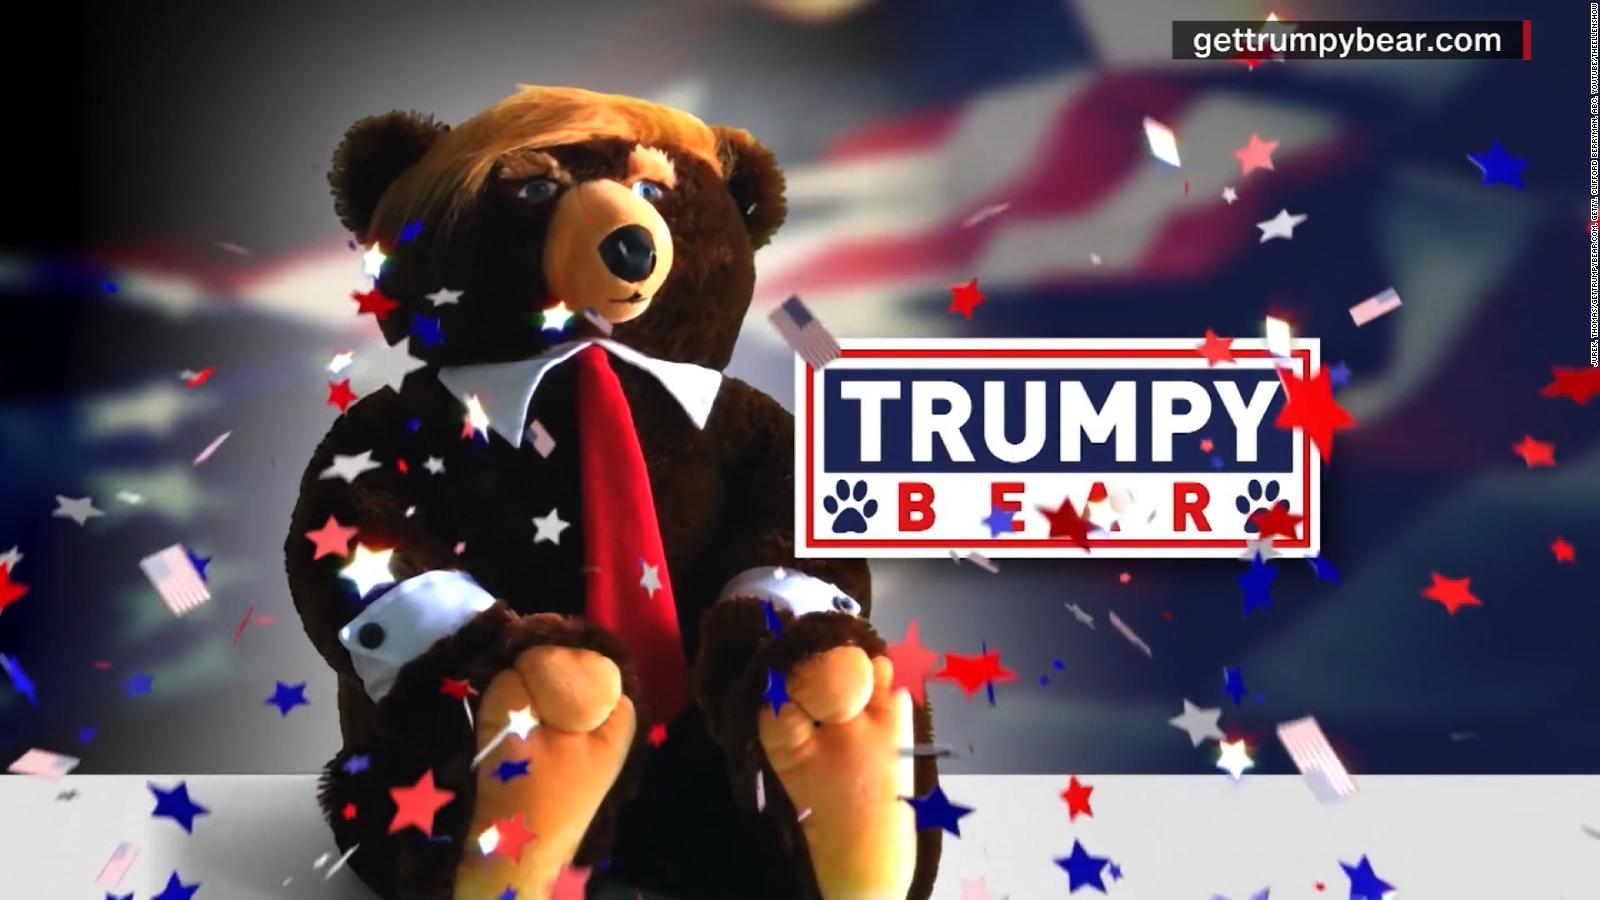 trump teddy bear for sale